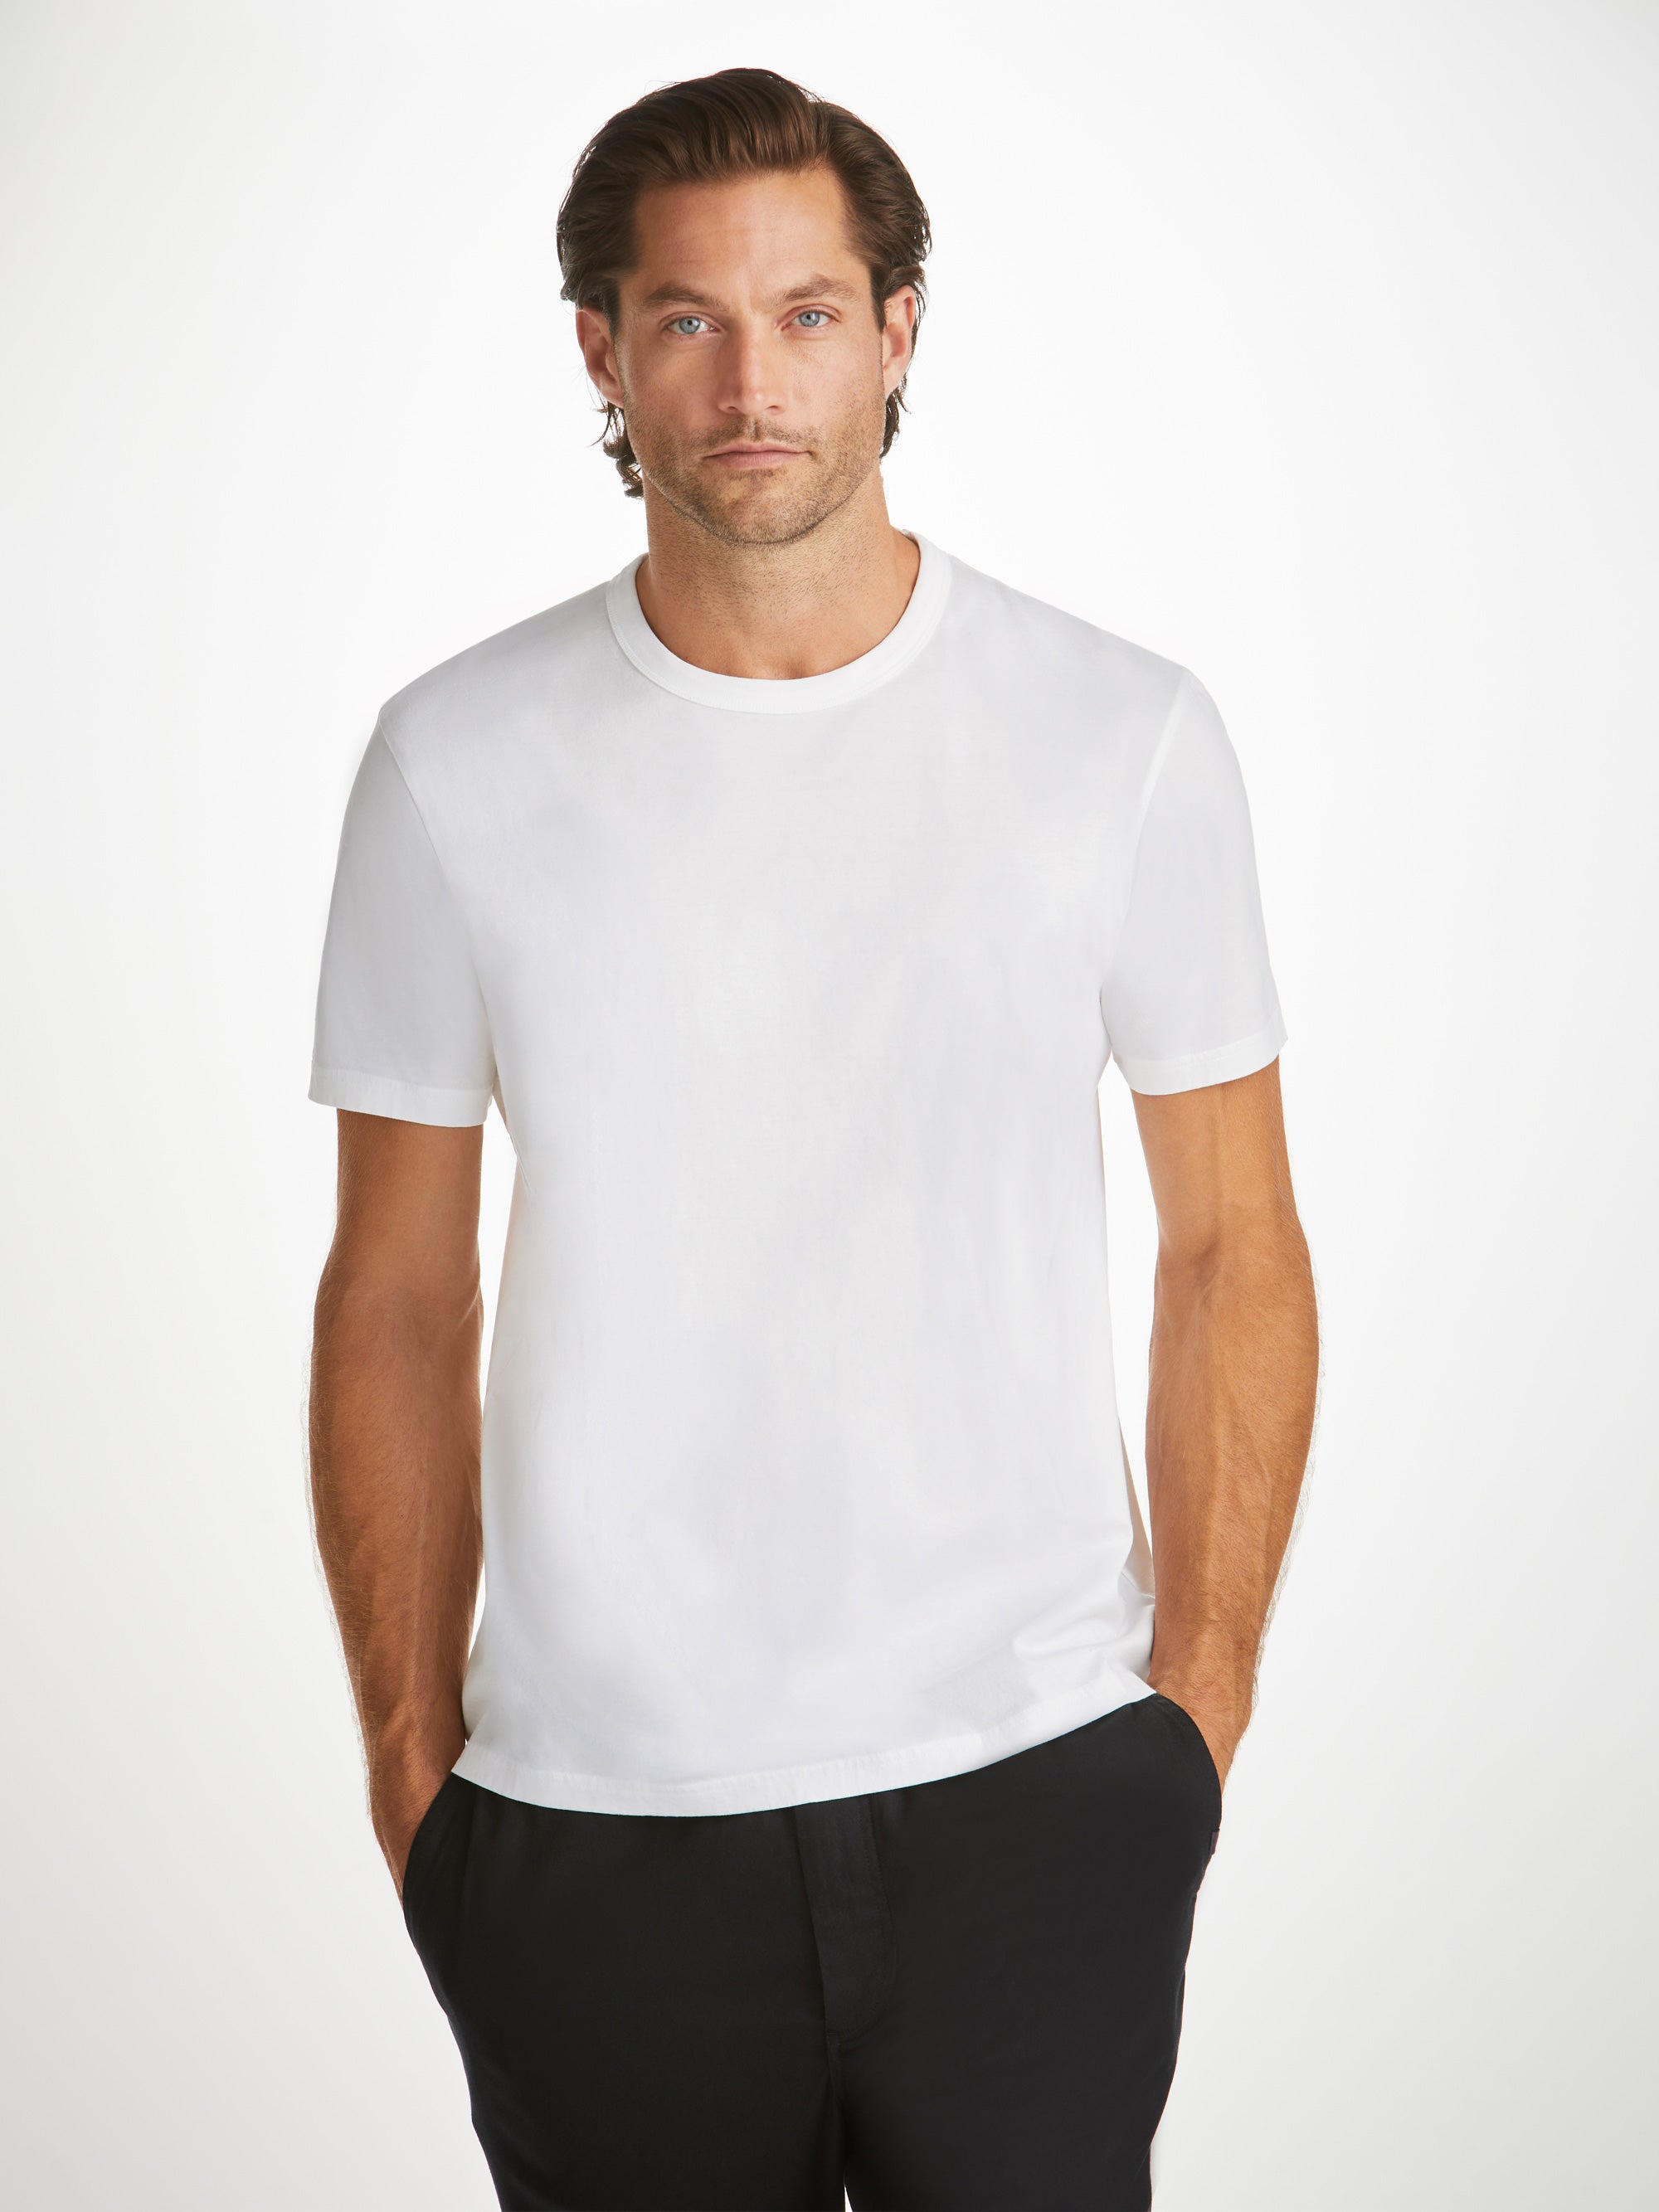 T-shirt Branca Algodão - Reimar Store